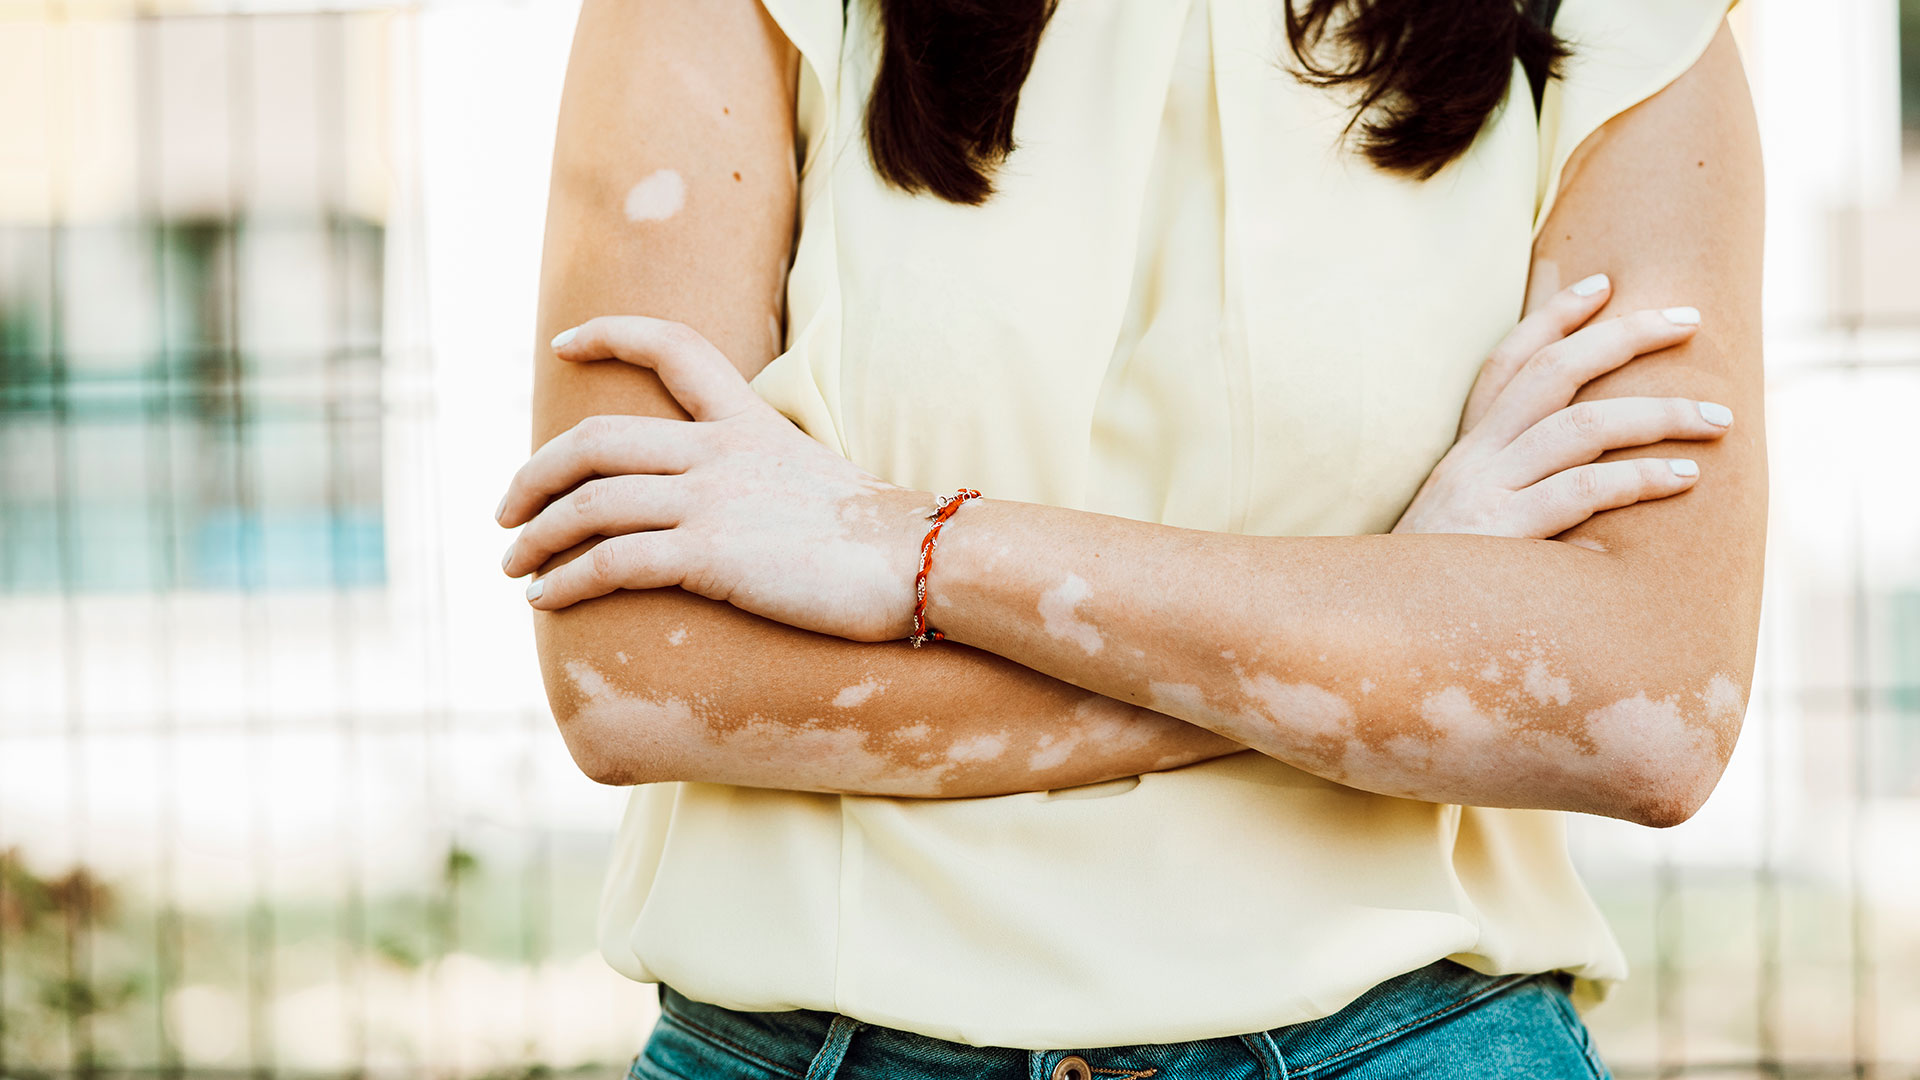 La sobreexposición al sol sin protección, enfermedades de la piel como el vitíligo o la dermatitis atópica y desequilibrios en la alimentación son algunos de los factores más comunes de las manchas blancas en la piel (Getty)
